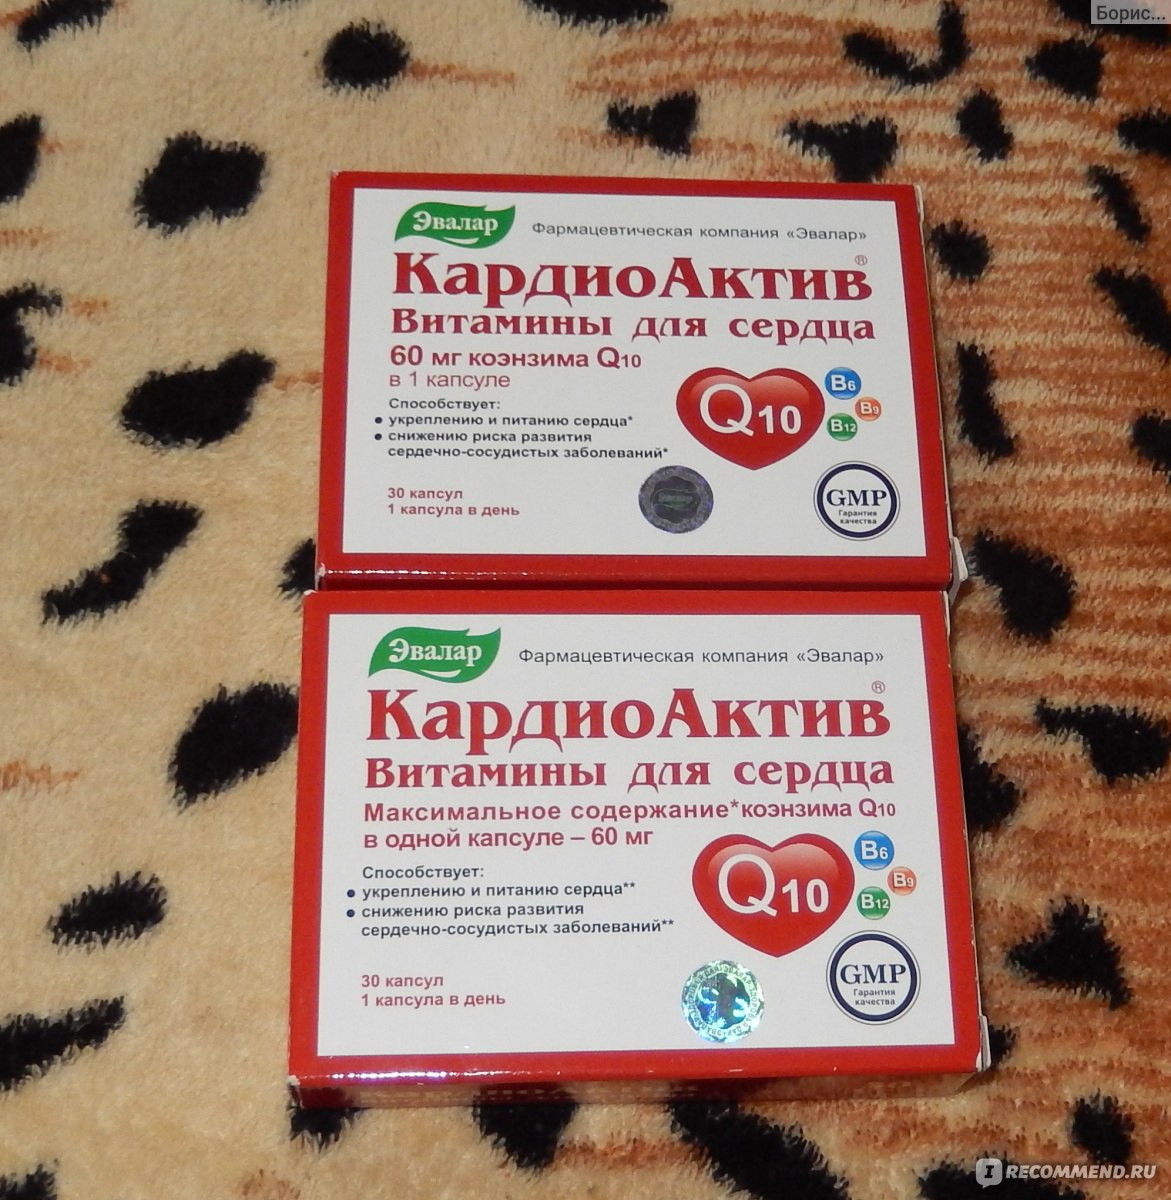 Кардиоактив таурин таблетки